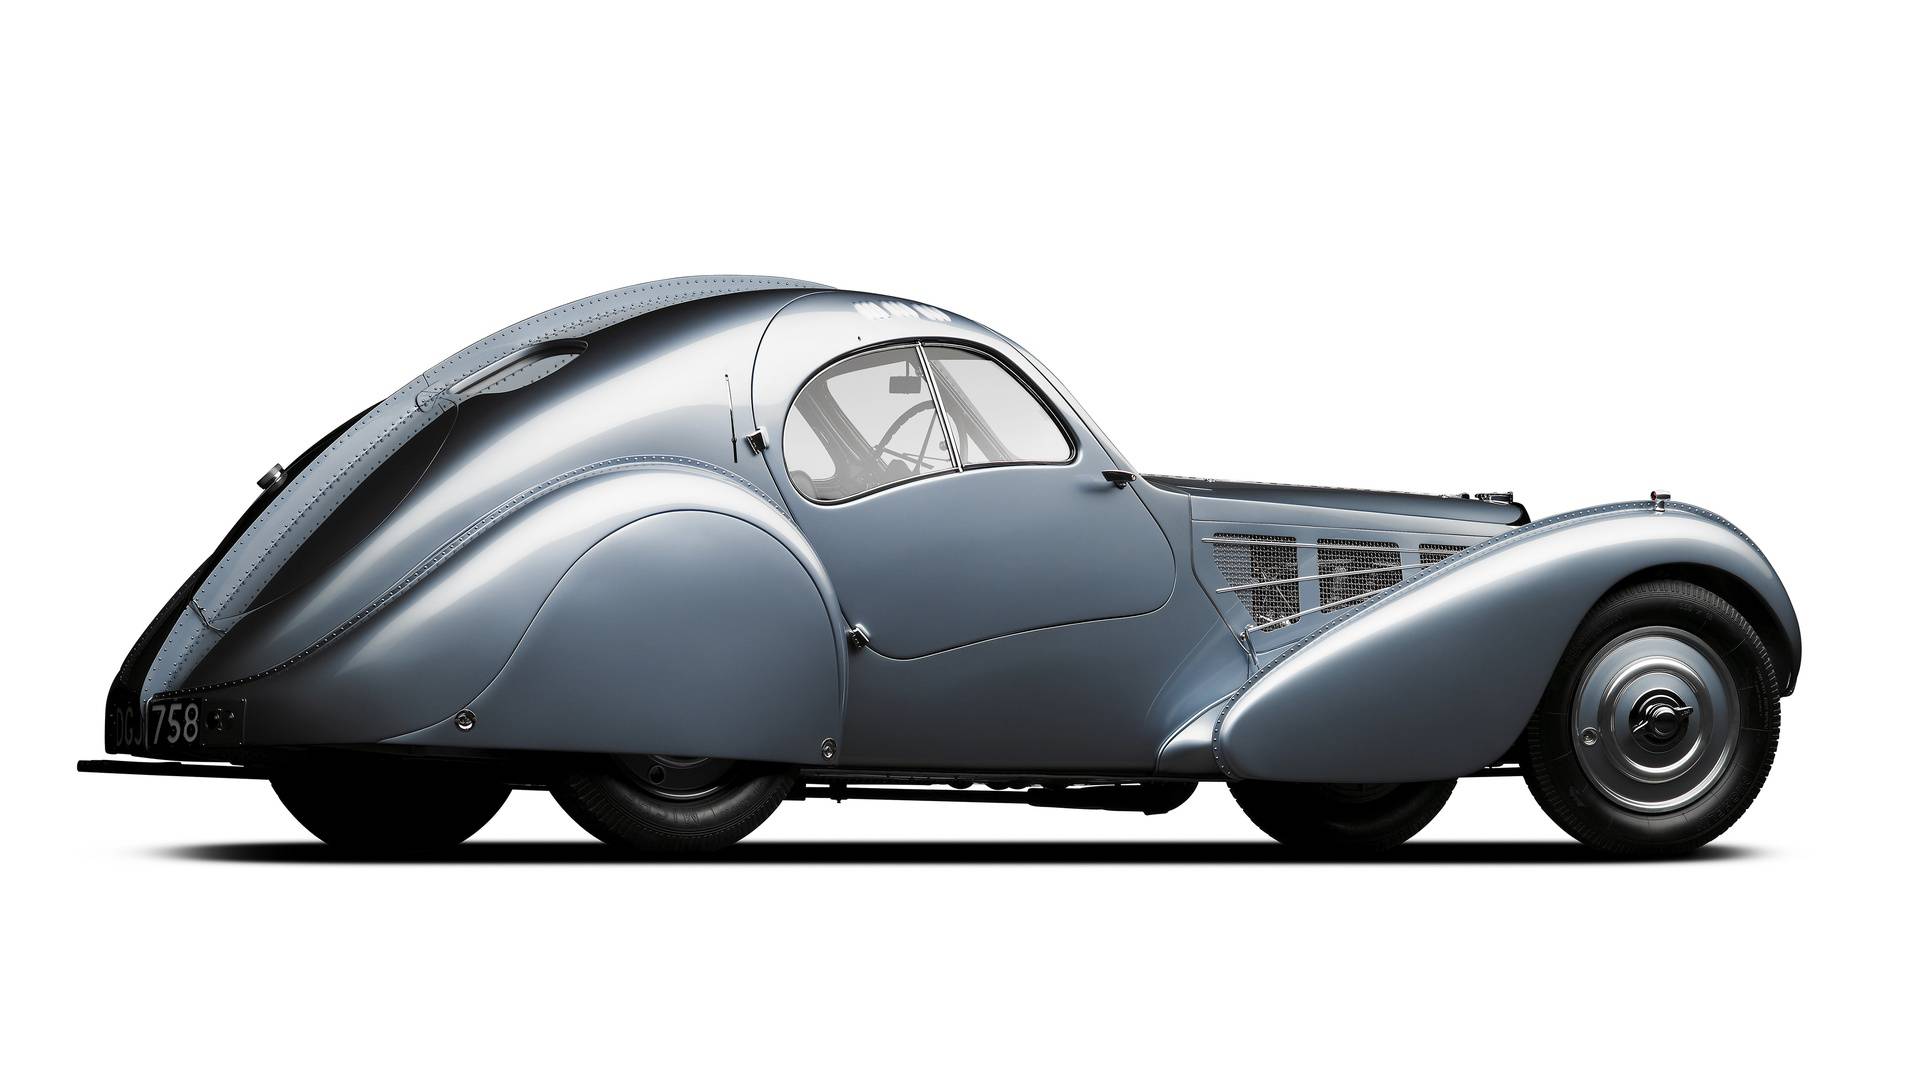 Povijest Bugattija prepuna je padova, zašto VW želi prodati, a Rimac kupiti slavnu tvrtku?